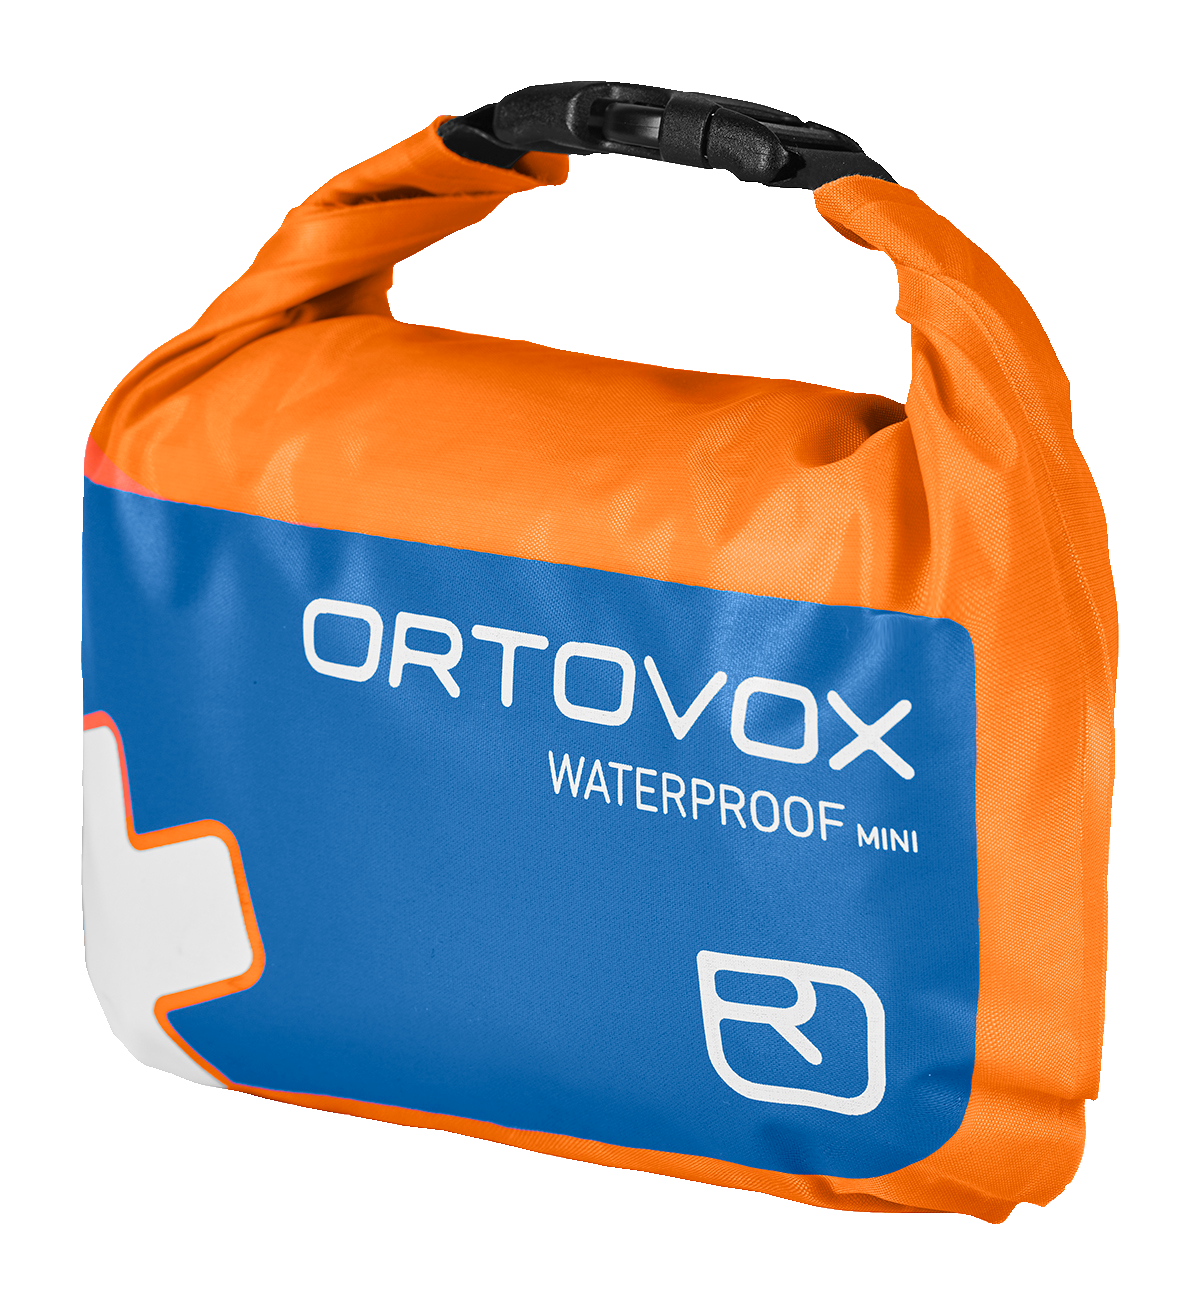 Ortovox First Aid Waterproof Mini - First aid kit